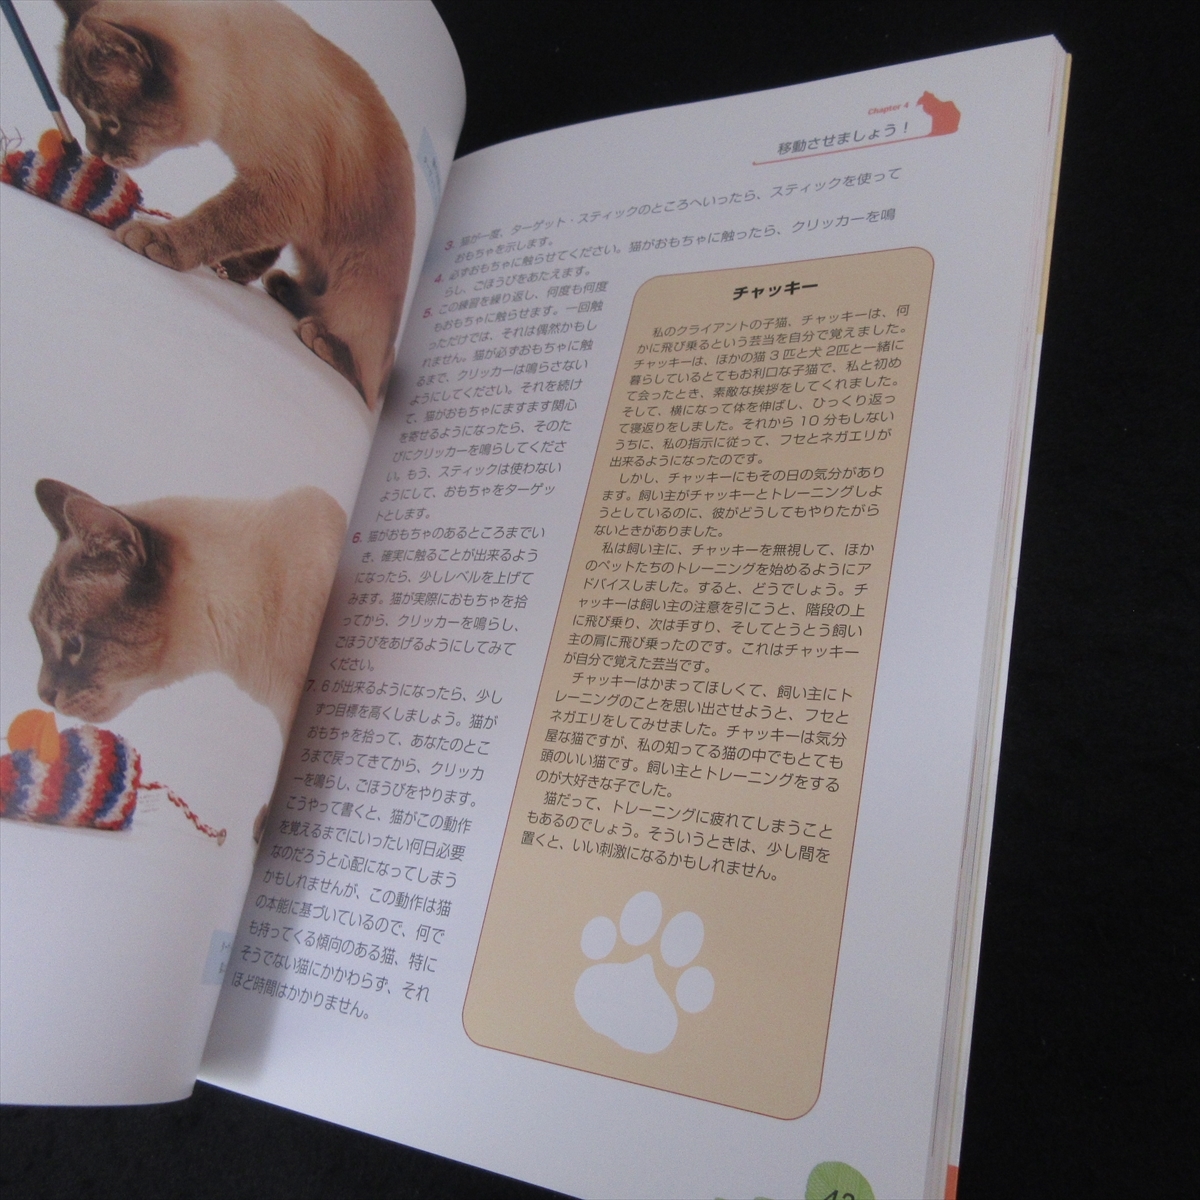  прекрасный товар *книга@[.... кошка .... кошка тренировка ]# отправка 170 иен Miriam *fi-ru Zoo babino домашнее животное жизнь фирма 1 день 10 минут воспитание прогулка .*